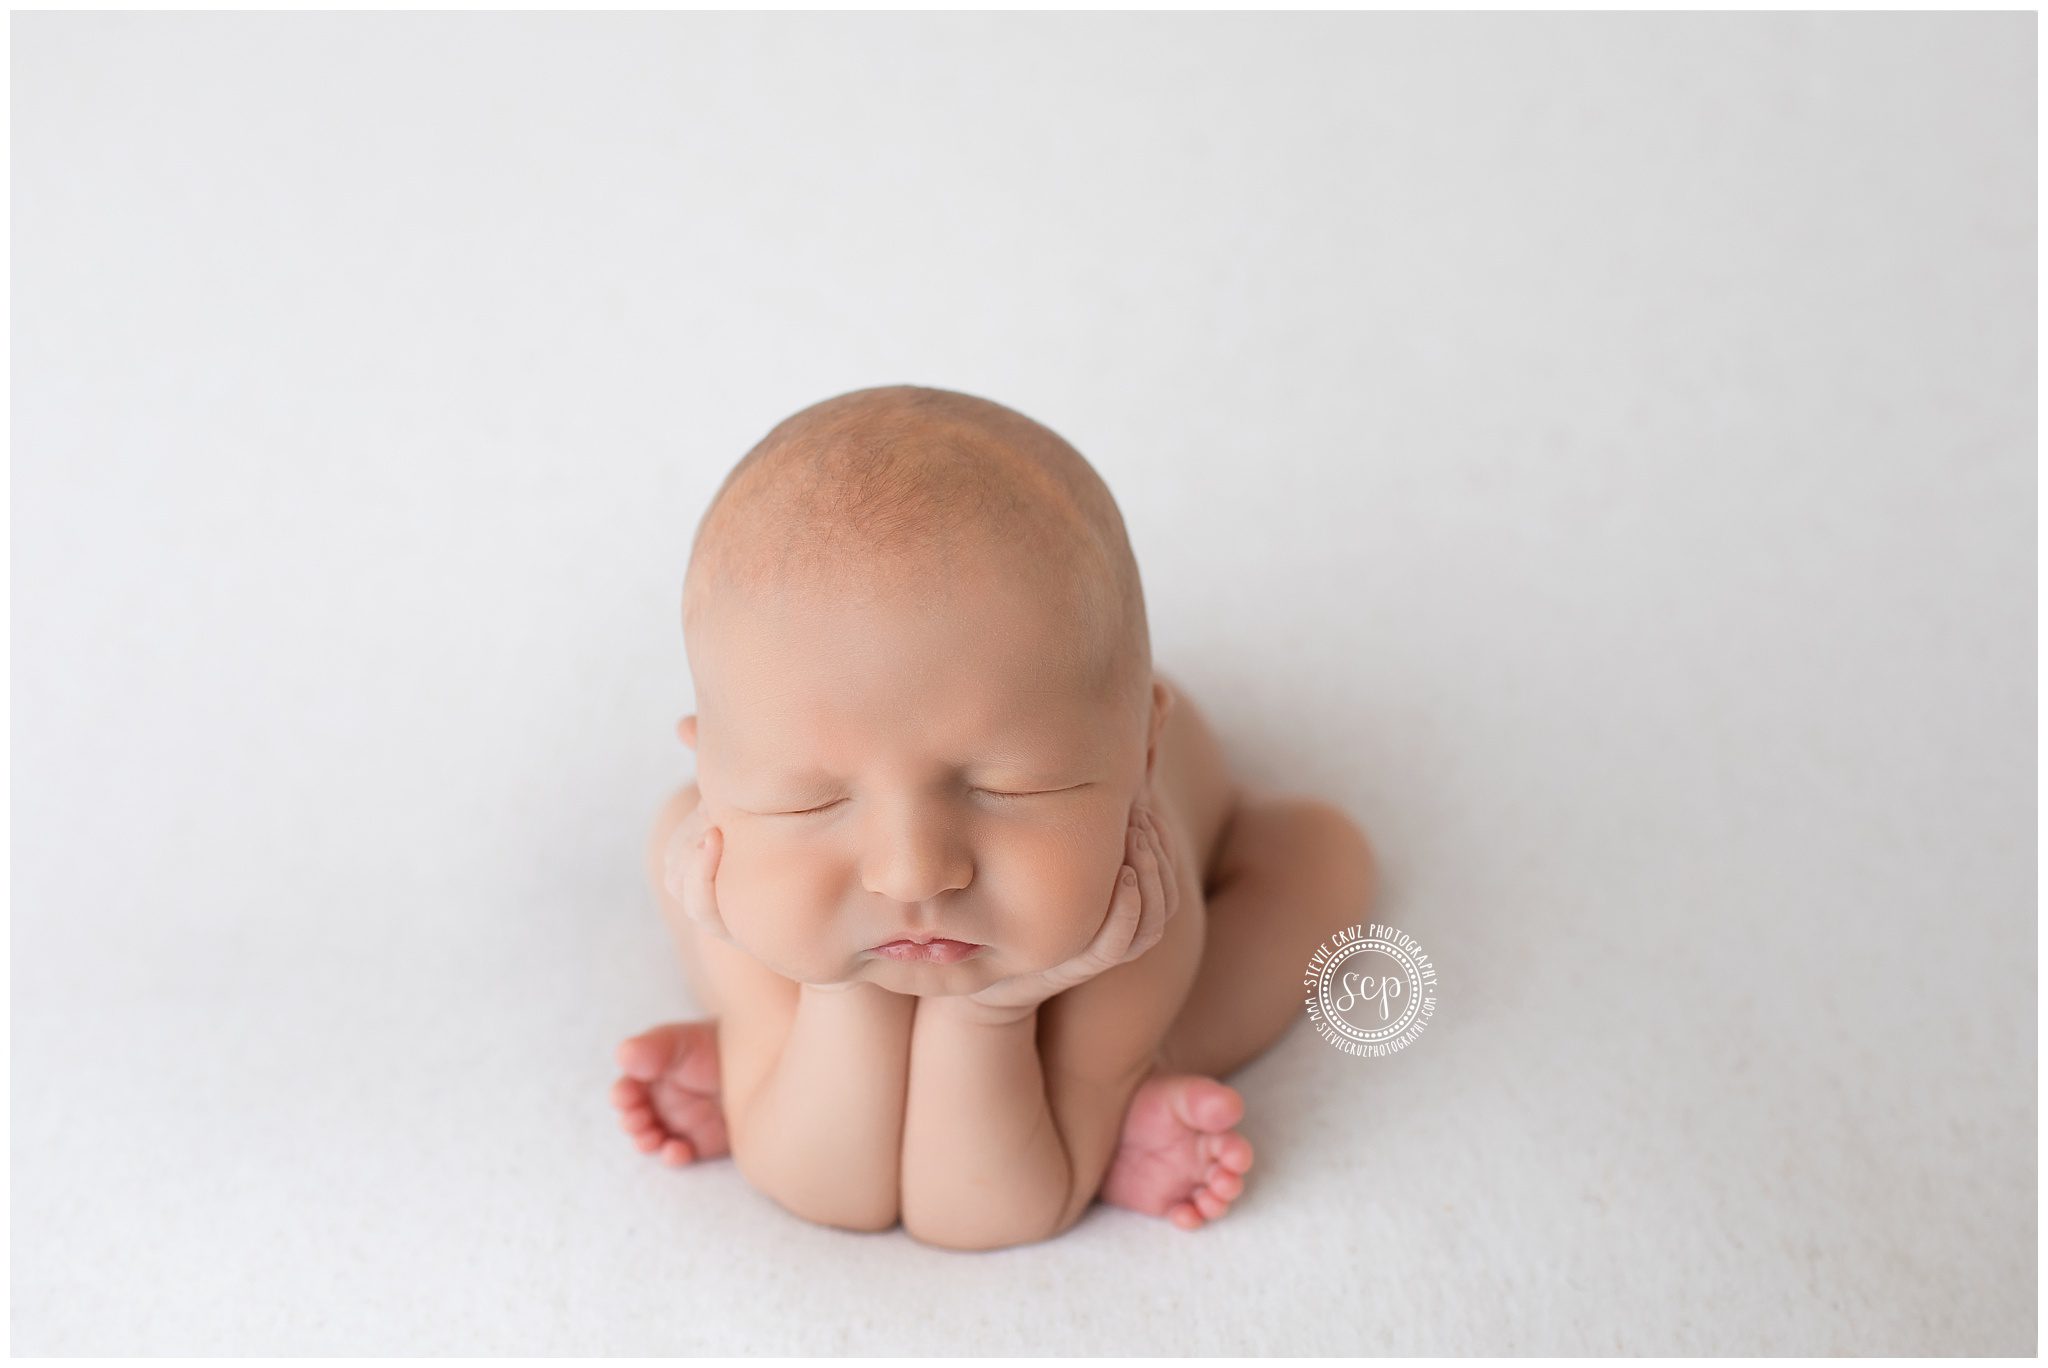 Baby boy newborn photoshoot inspiration . Taken in Anaheim Hills photo studio 